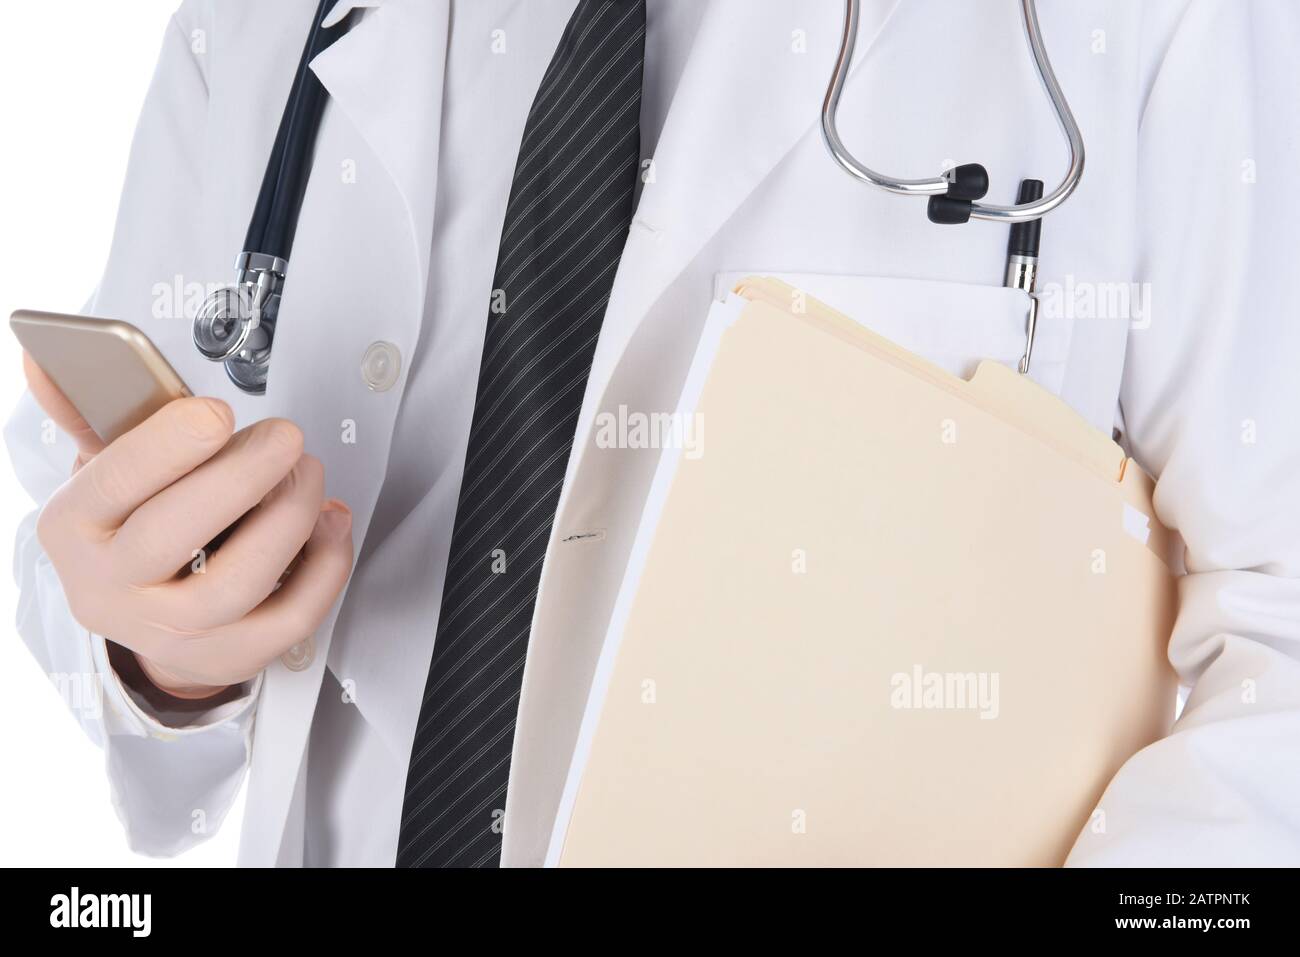 Gros plan d'un médecin tenant son téléphone portable dans une main et dossiers de dossier sous son autre bras. L'homme n'est pas reconnaissable. Banque D'Images